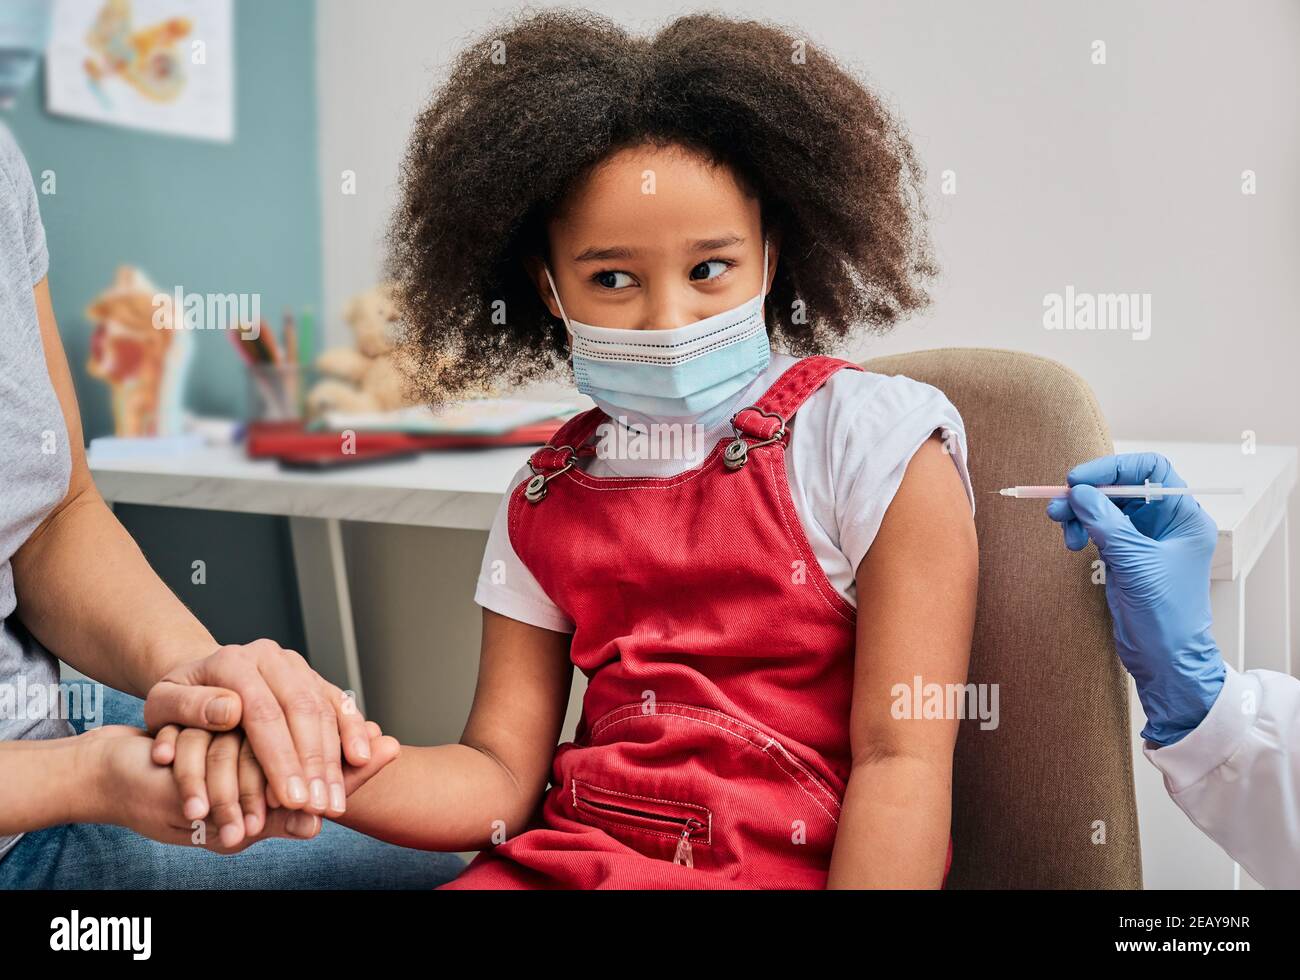 Impfung von Kindern. Afroamerikanisches weibliches Kind während der Impfung in der Arztpraxis. Globale Epidemie Stockfoto